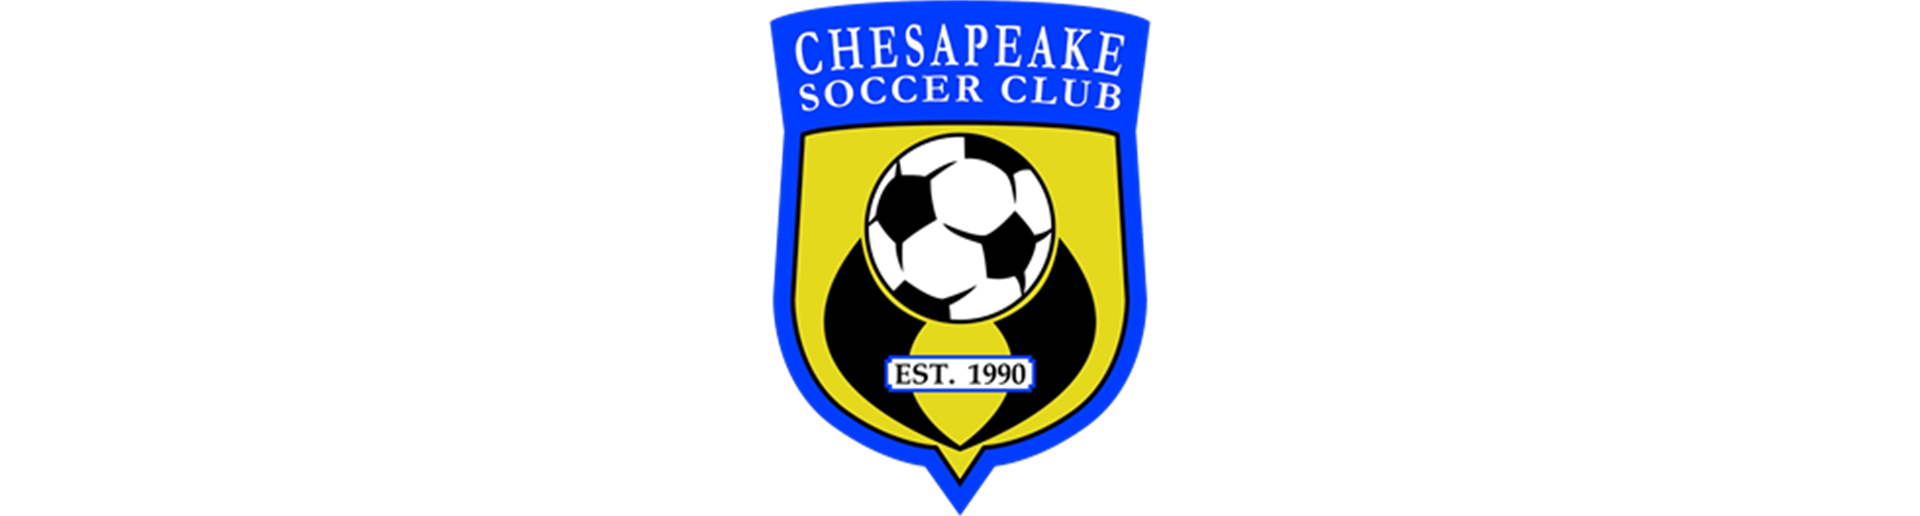 Chesapeake Soccer Club > Home